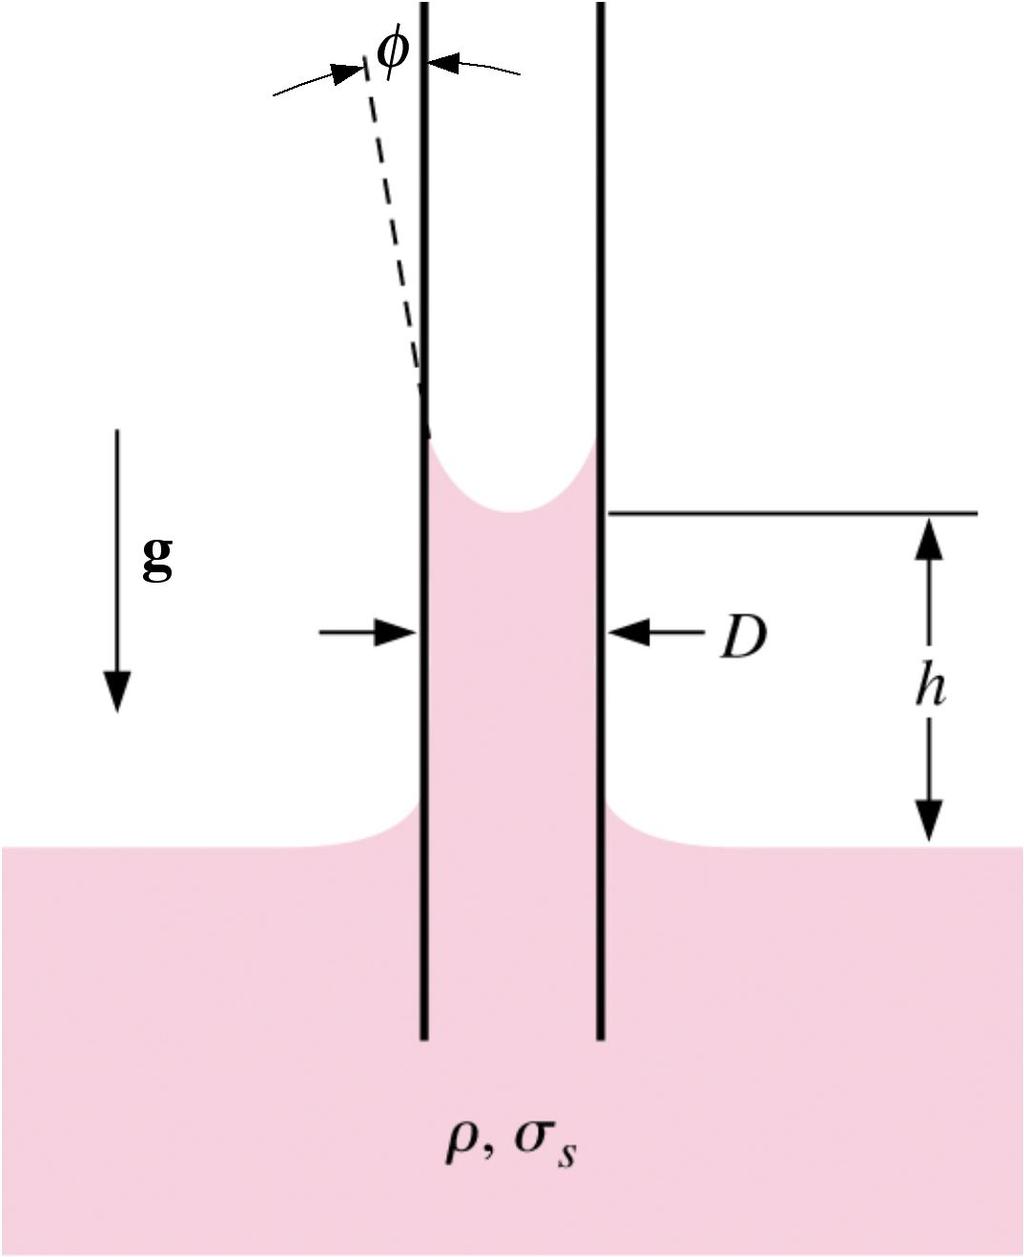 7.46 Quando un tubicino di piccolo diametro D viene inserito in un volume di liquido a superficie libera, questo risale nel tubicino fino ad una certa altezza h.